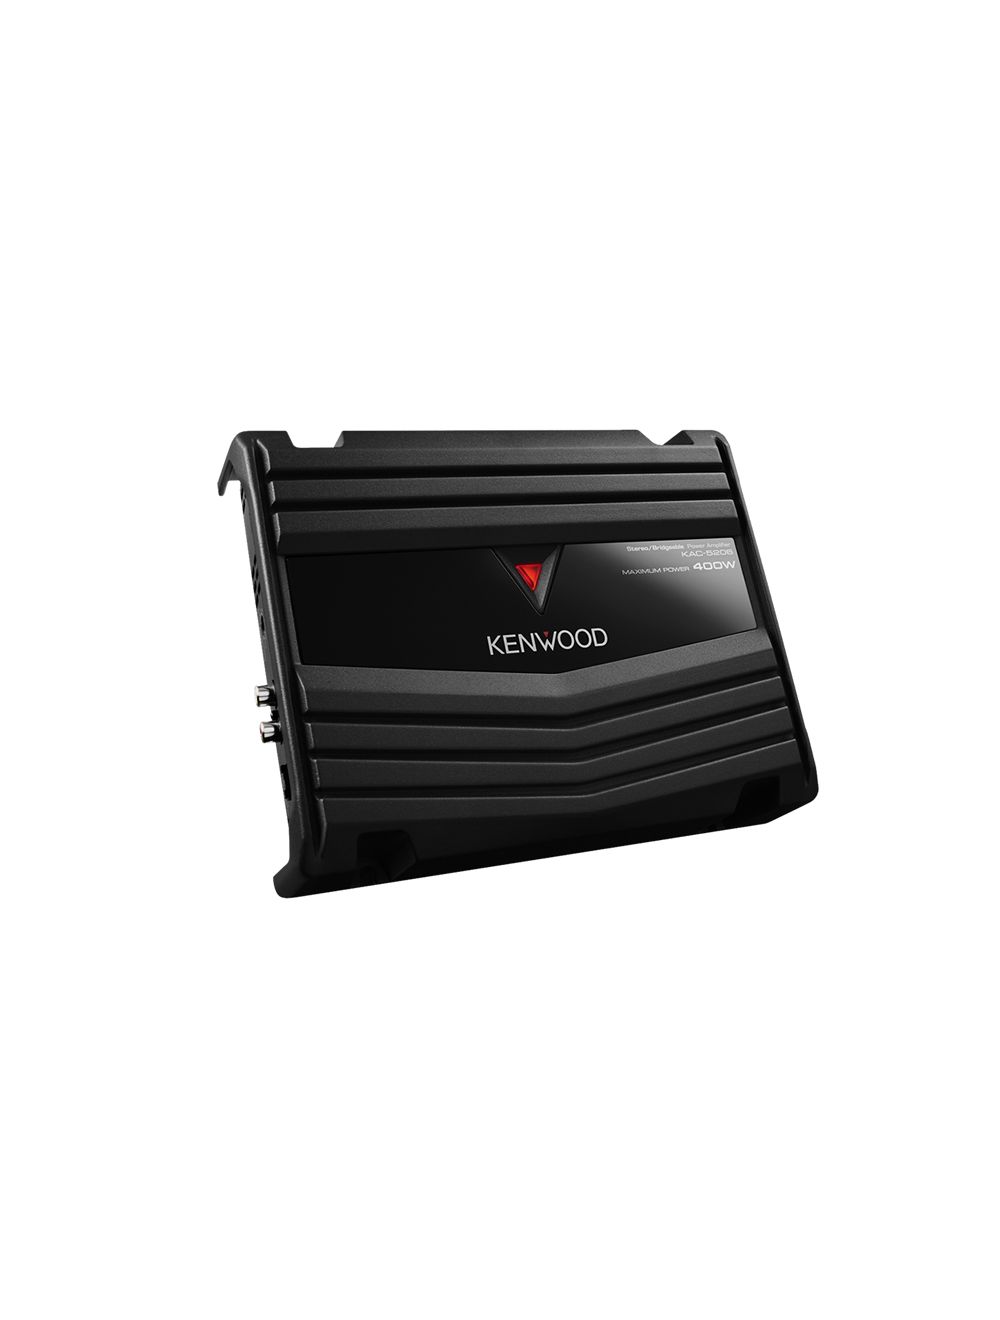 Kenwood KAC-5206 Stereo / Bridgeable Power Amplifier